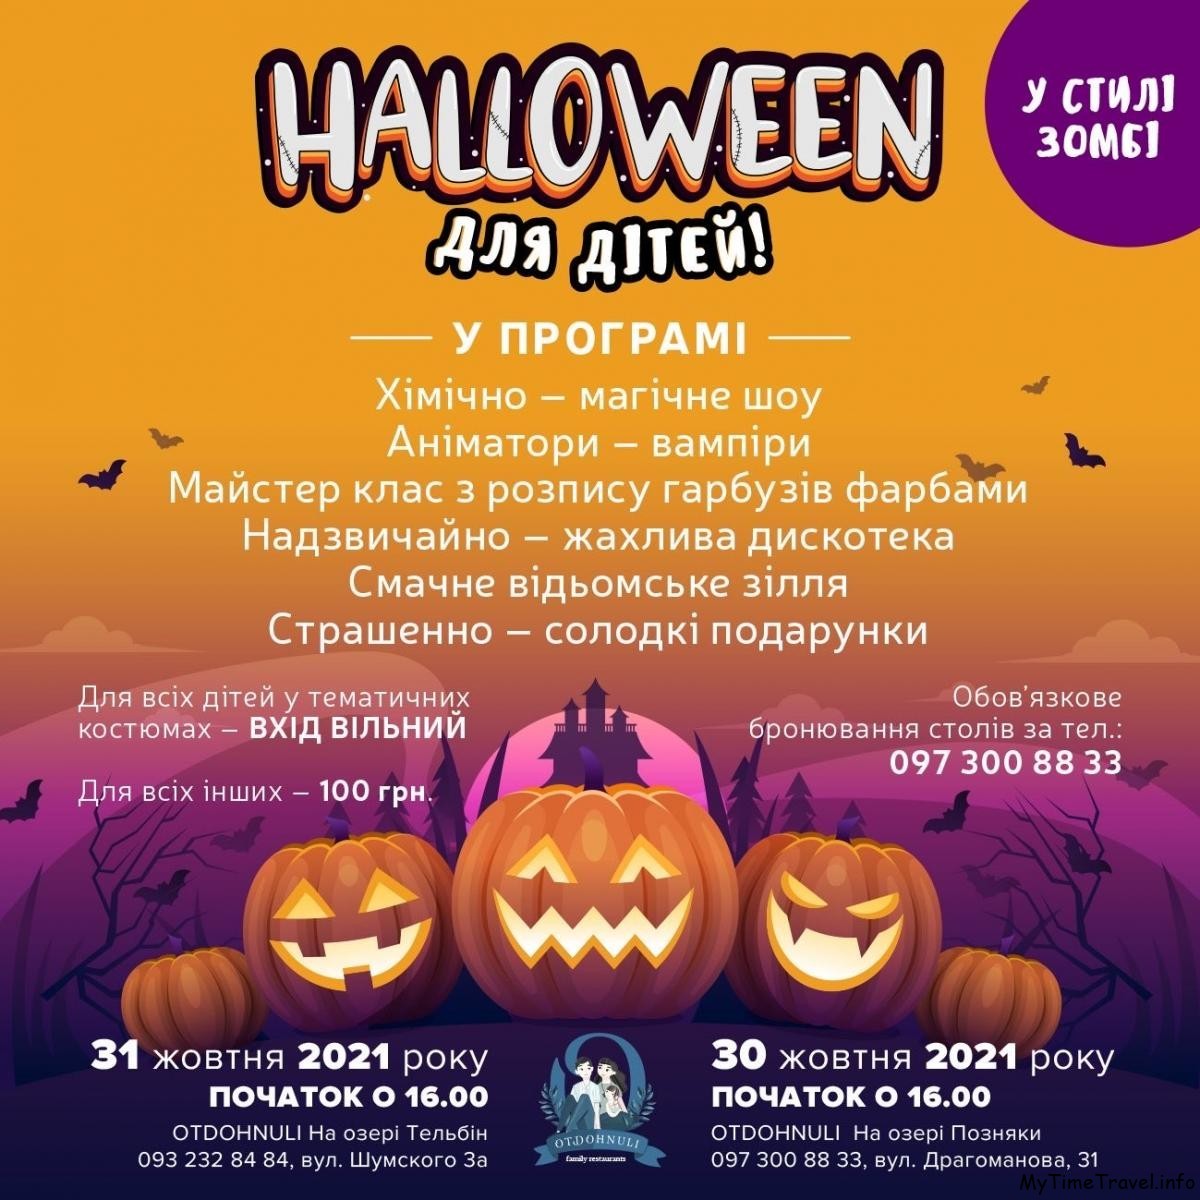 Хэллоуин для детей в Киеве 2021